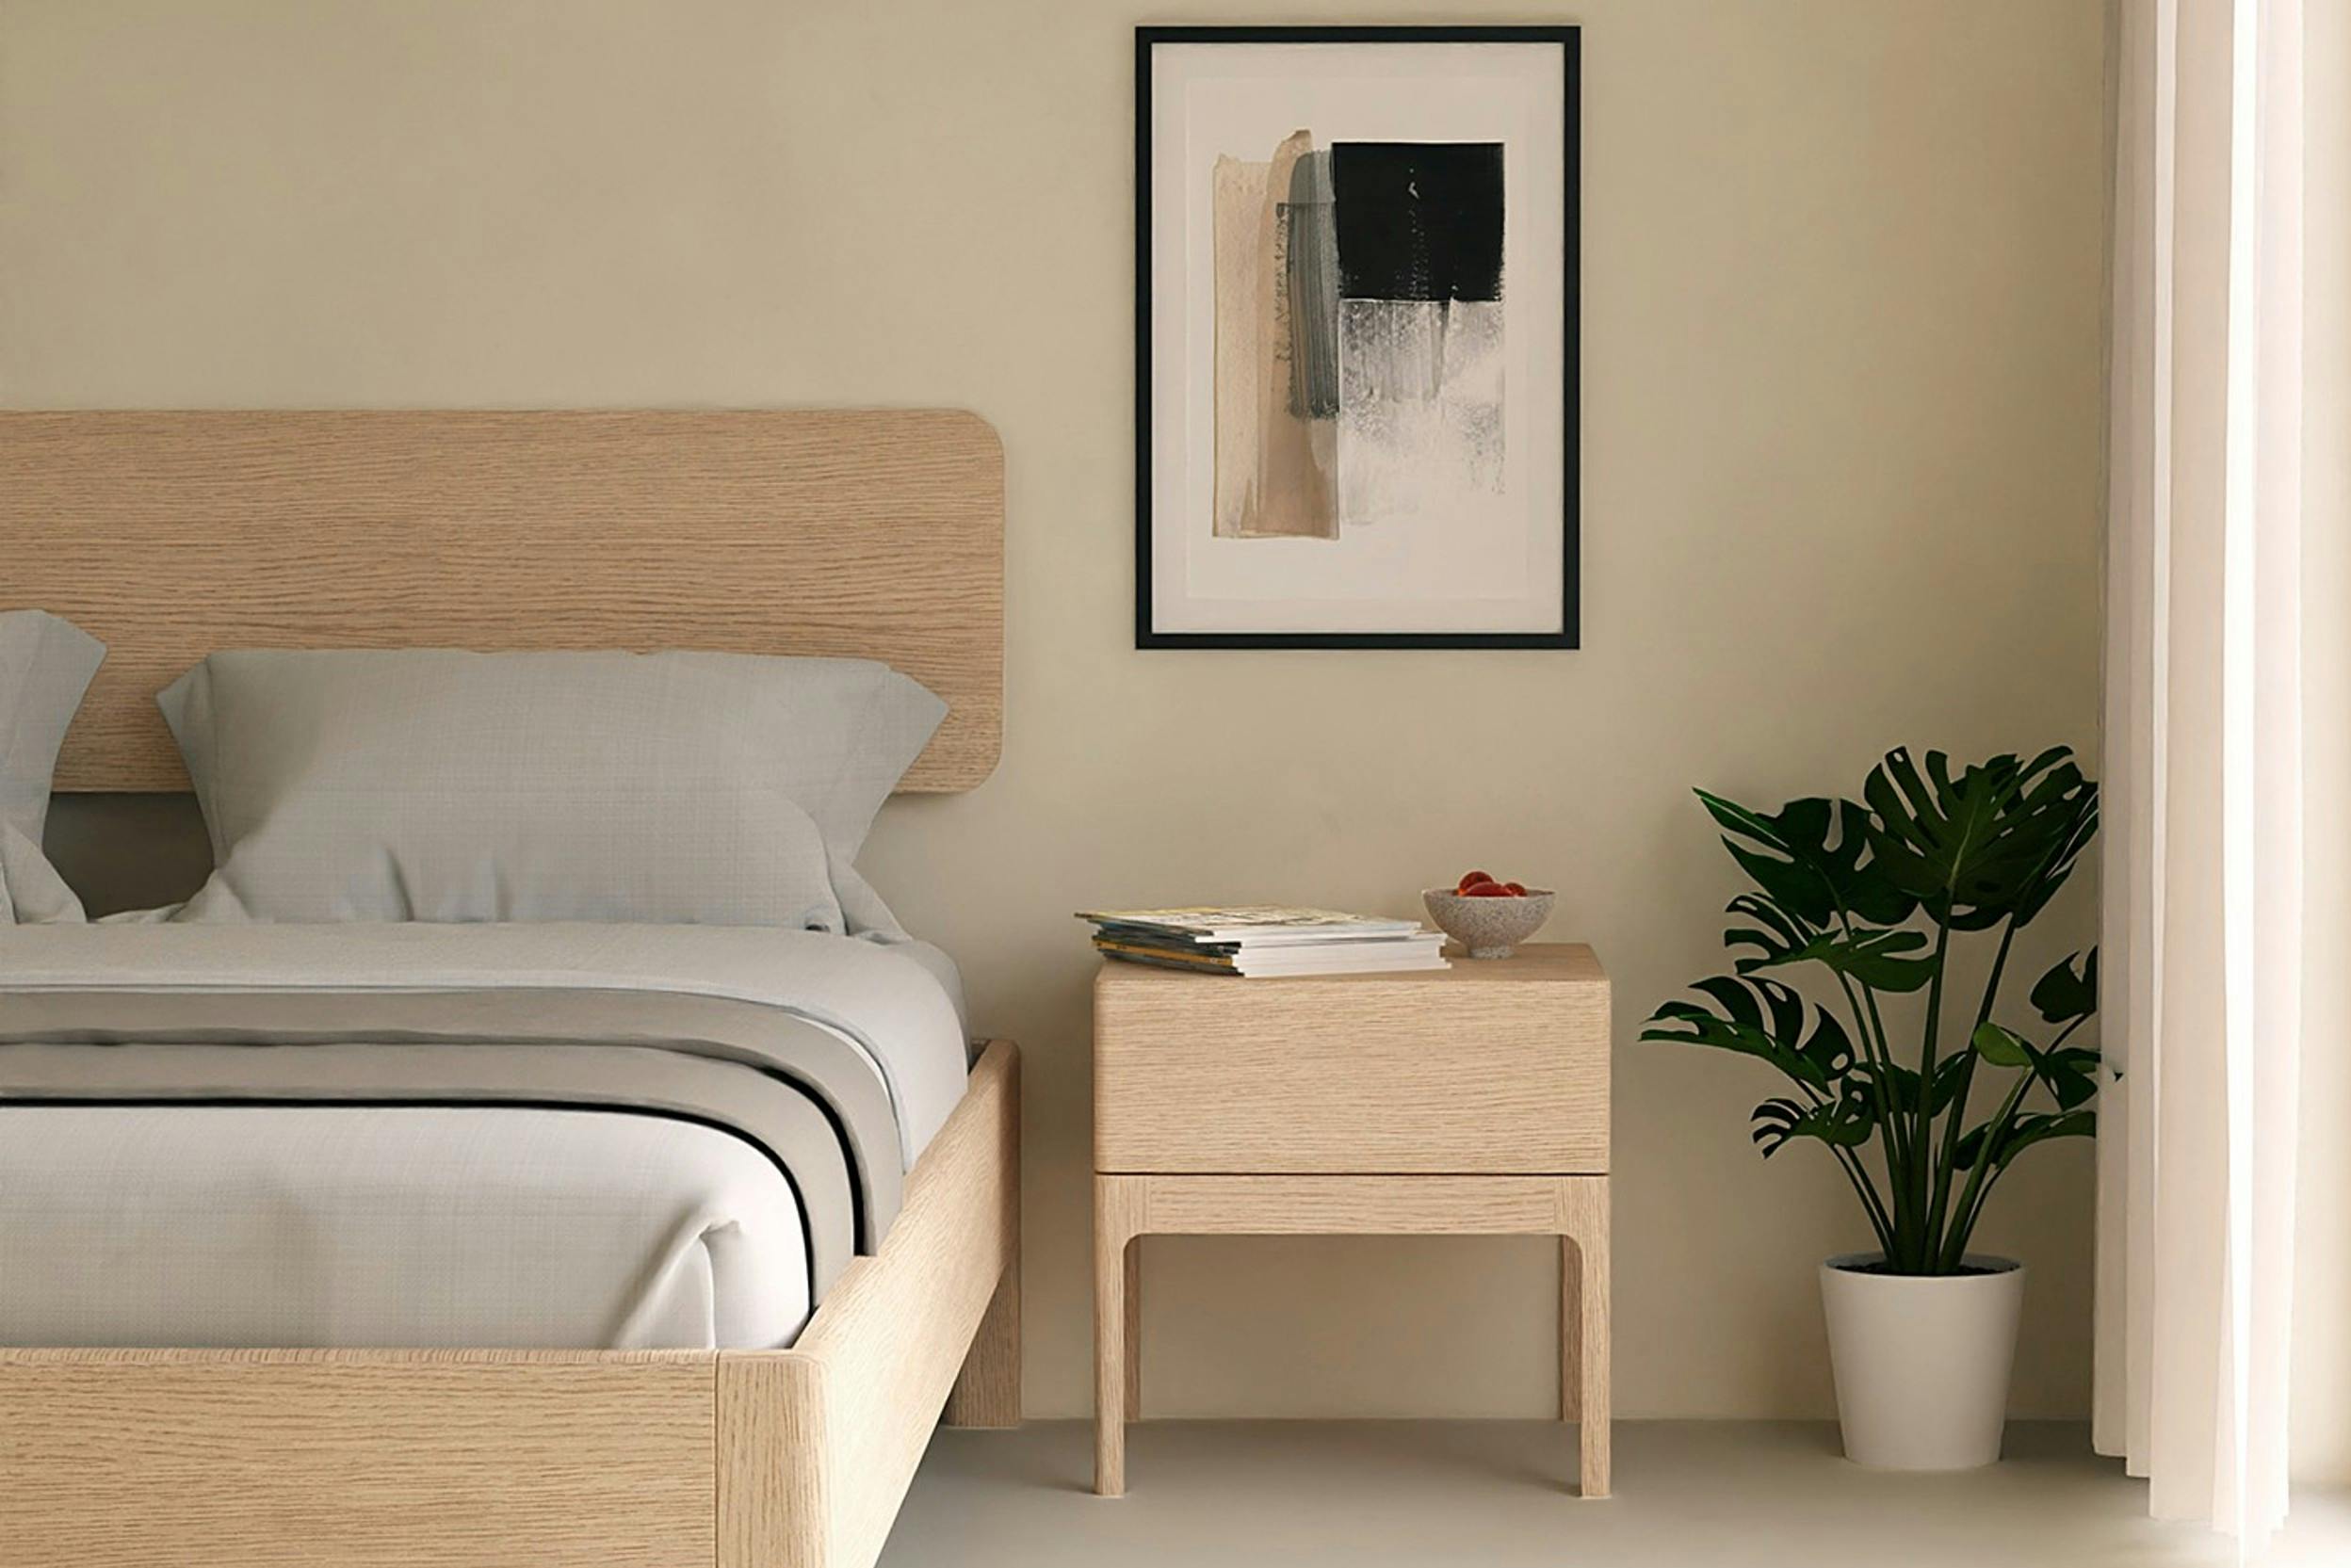 Holzbett mit passendem Nachttisch in einem minimalistischen, abgerundeten Design